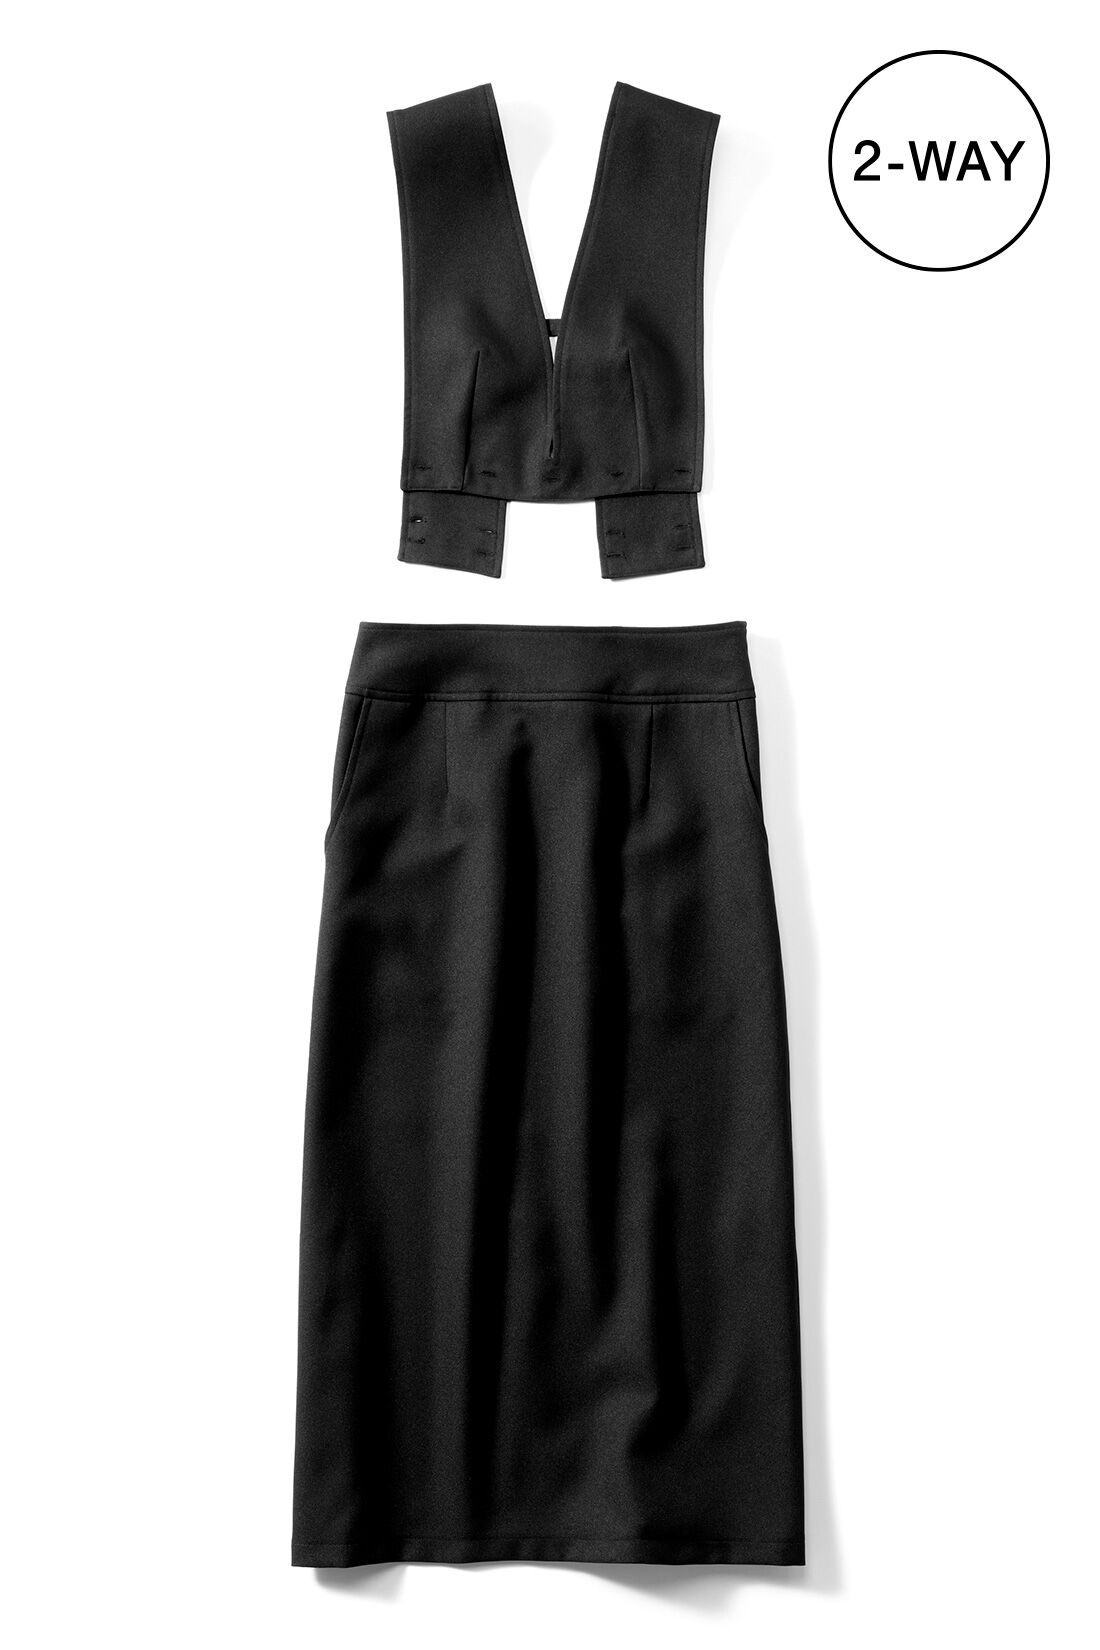 IEDIT|IEDIT[イディット]　着まわし広がる 2-WAY仕様がうれしい大人シルエットのジャンパースカート〈ブラック〉|※お届けするカラーとは異なります。